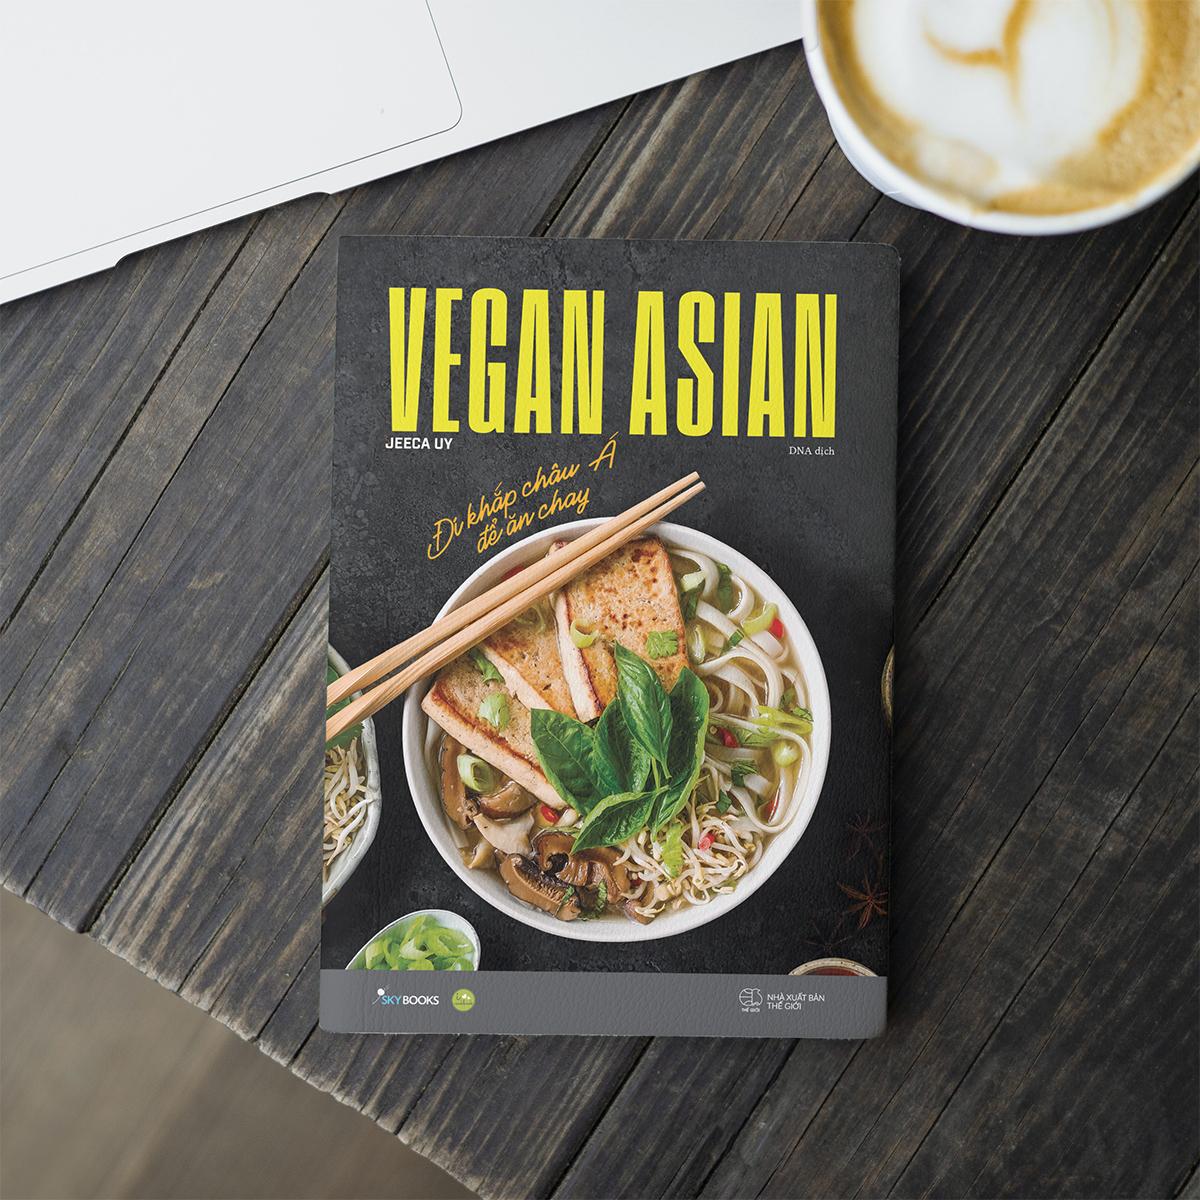 Vegan Asian - Đi Khắp Châu Á Để Ăn Chay